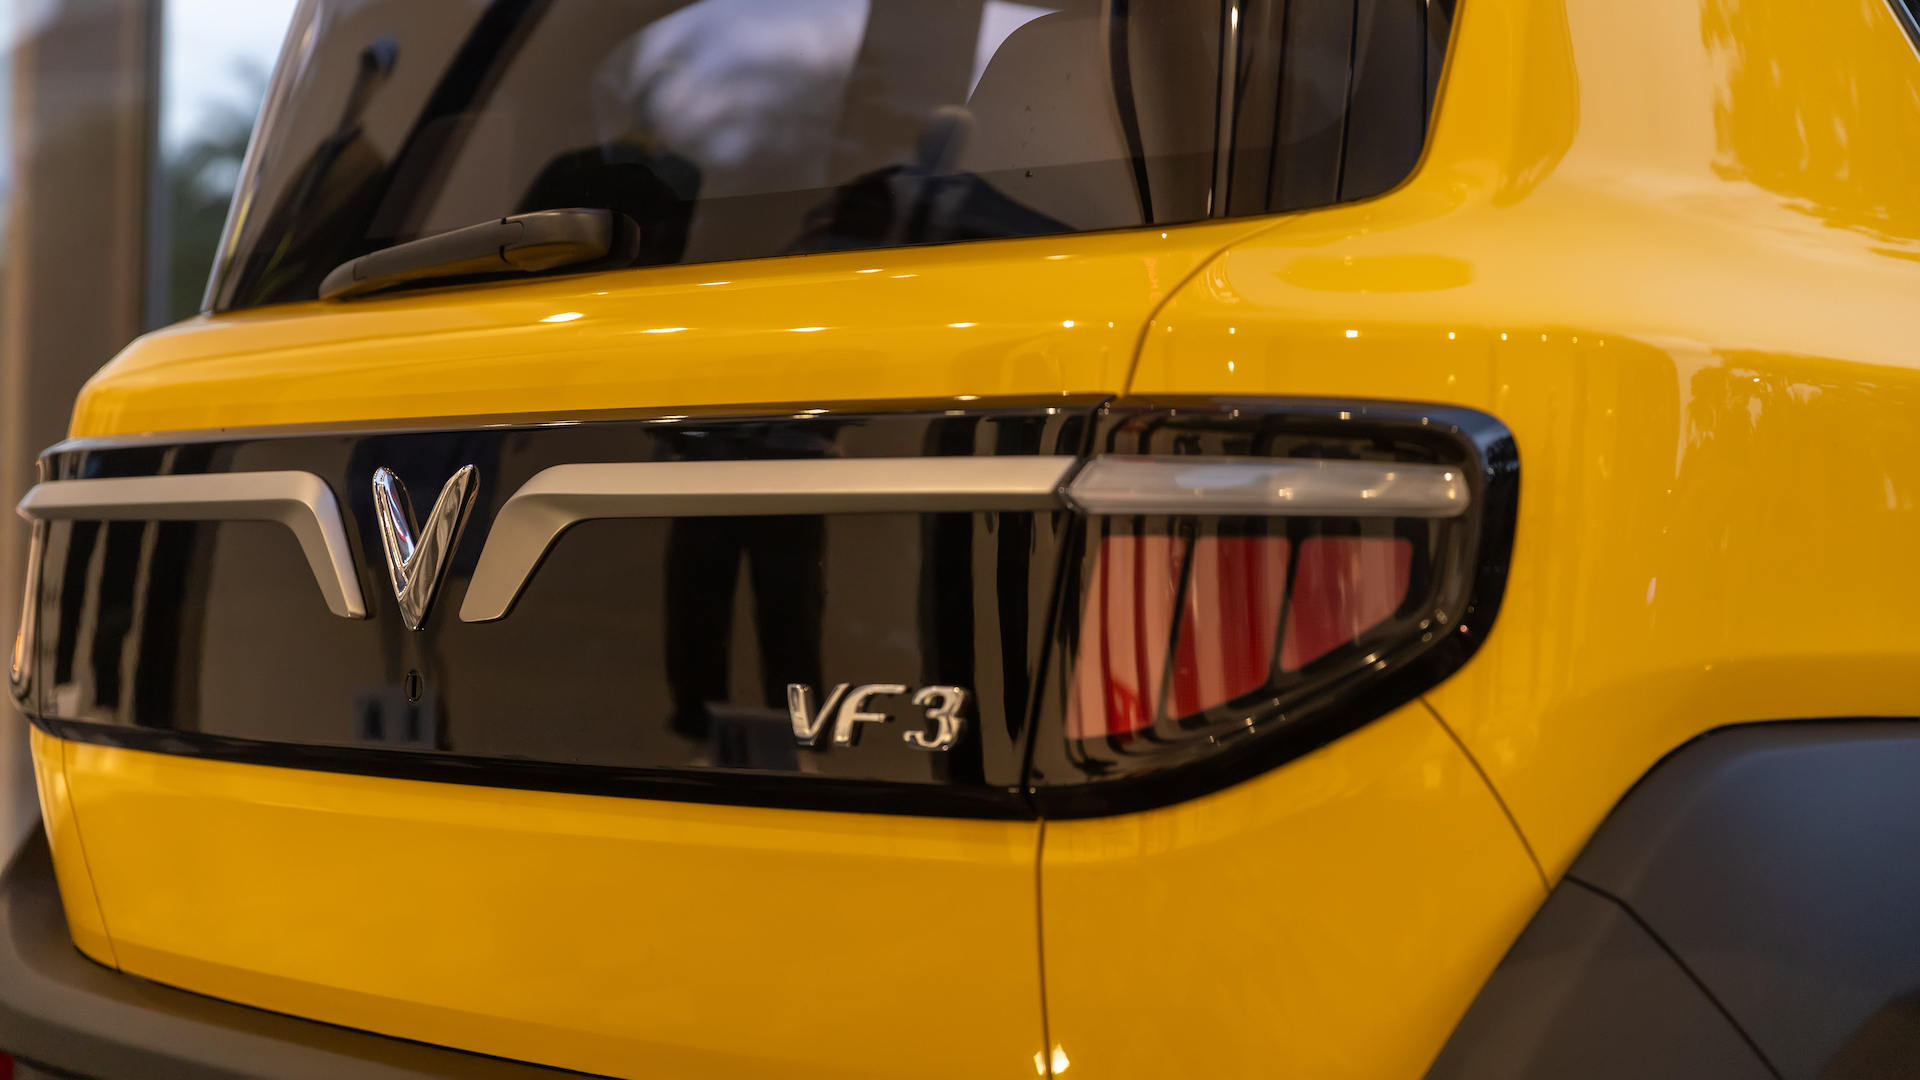 Triển lãm Xanh của VinFast, công nghệ hấp dẫn, mẫu xe VF3 xuất hiện - VF 3 MG 7078 copy